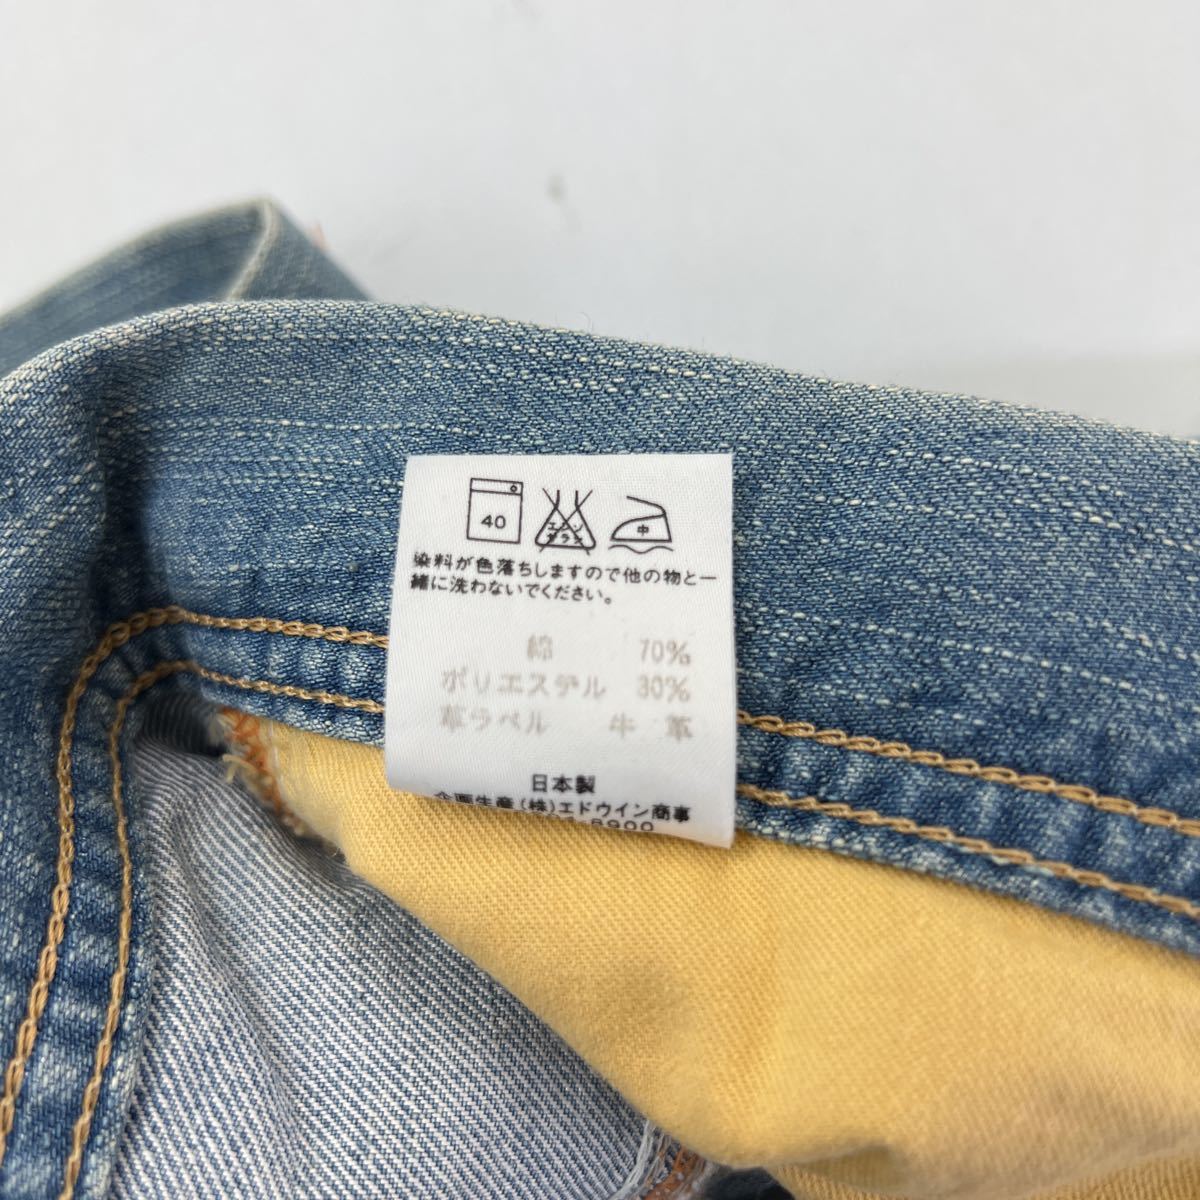 EDWIN * AD5 цельный разрезание длина ..* дизайн джинсы Denim брюки L American Casual Street б/у одежда MIX Edwin i- функция #Ja5921